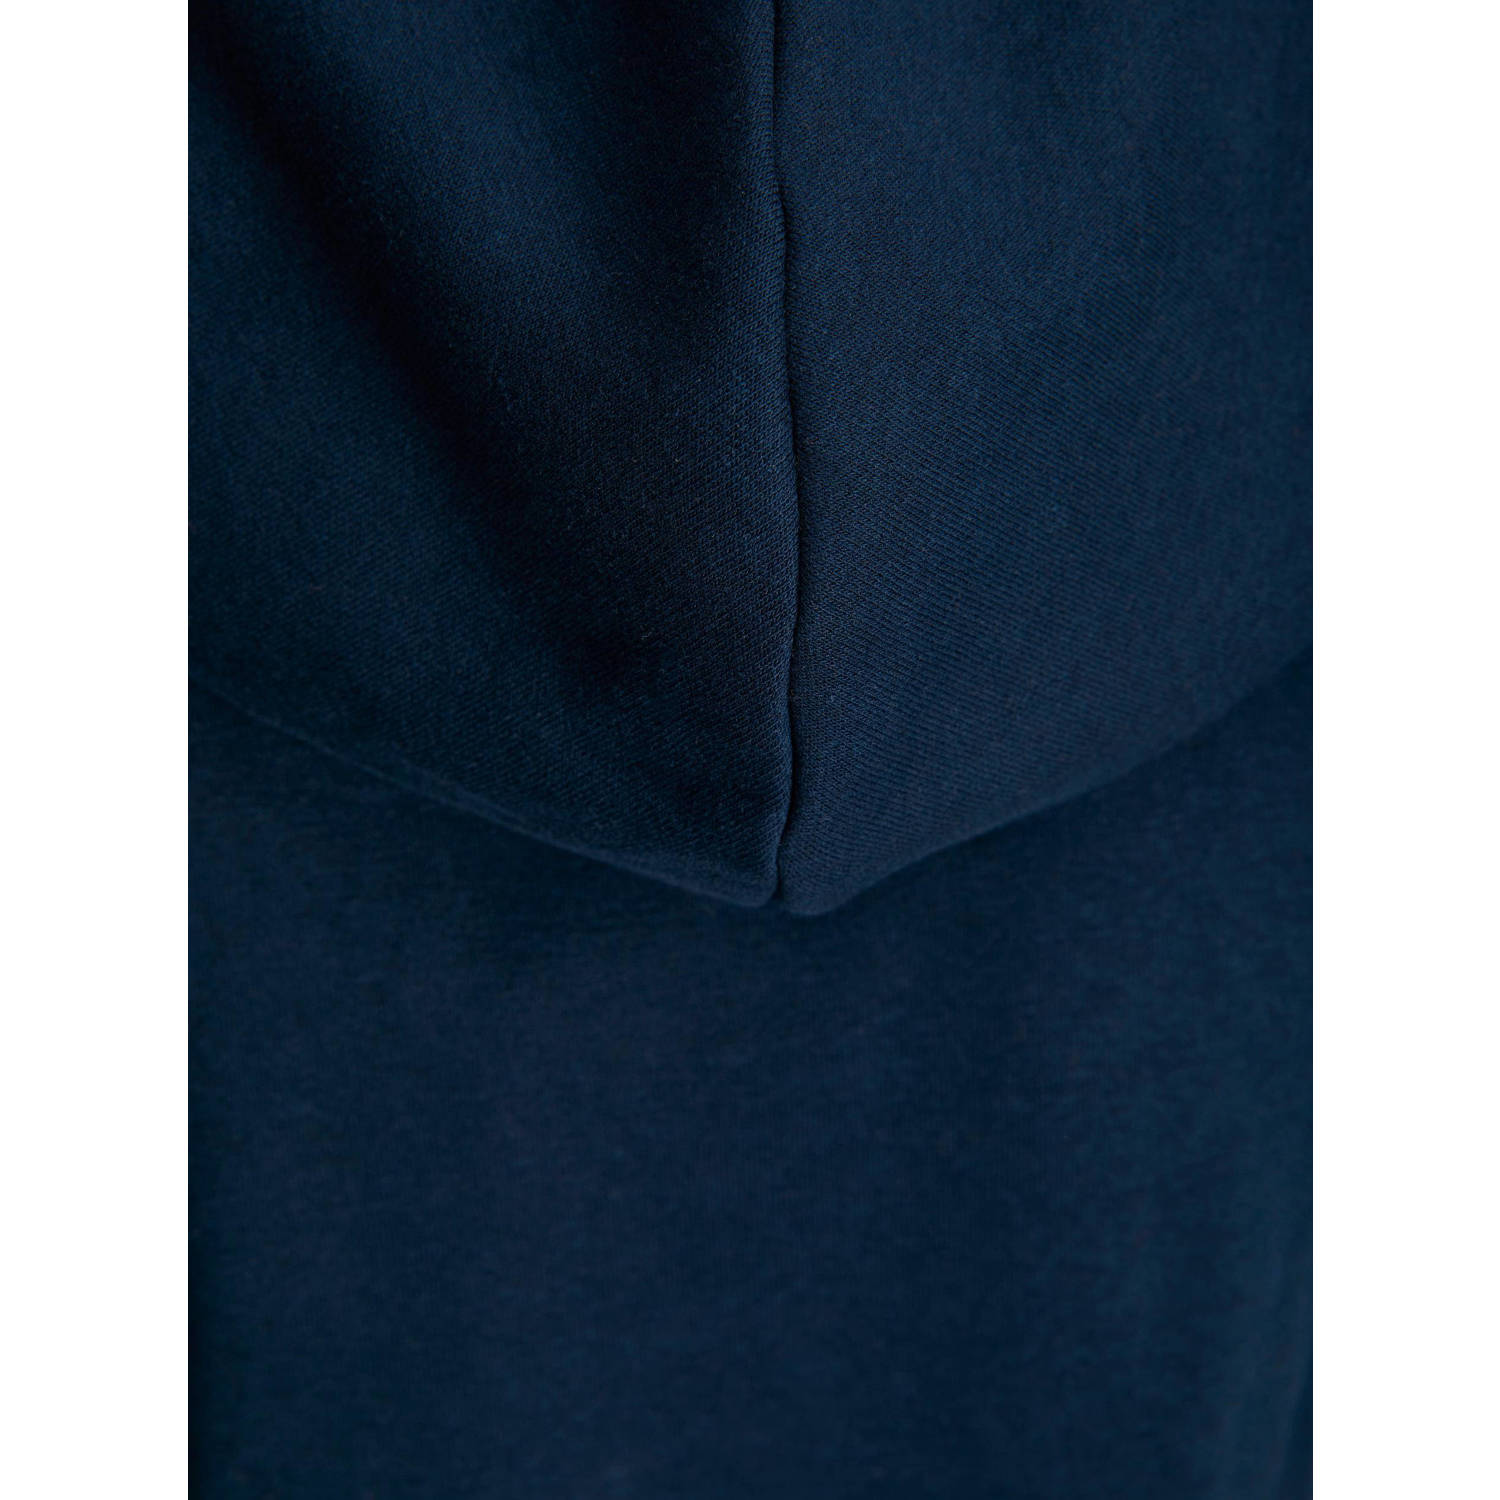 JACK & JONES JUNIOR hoodie JORLAKEWOOD met logo donkerblauw